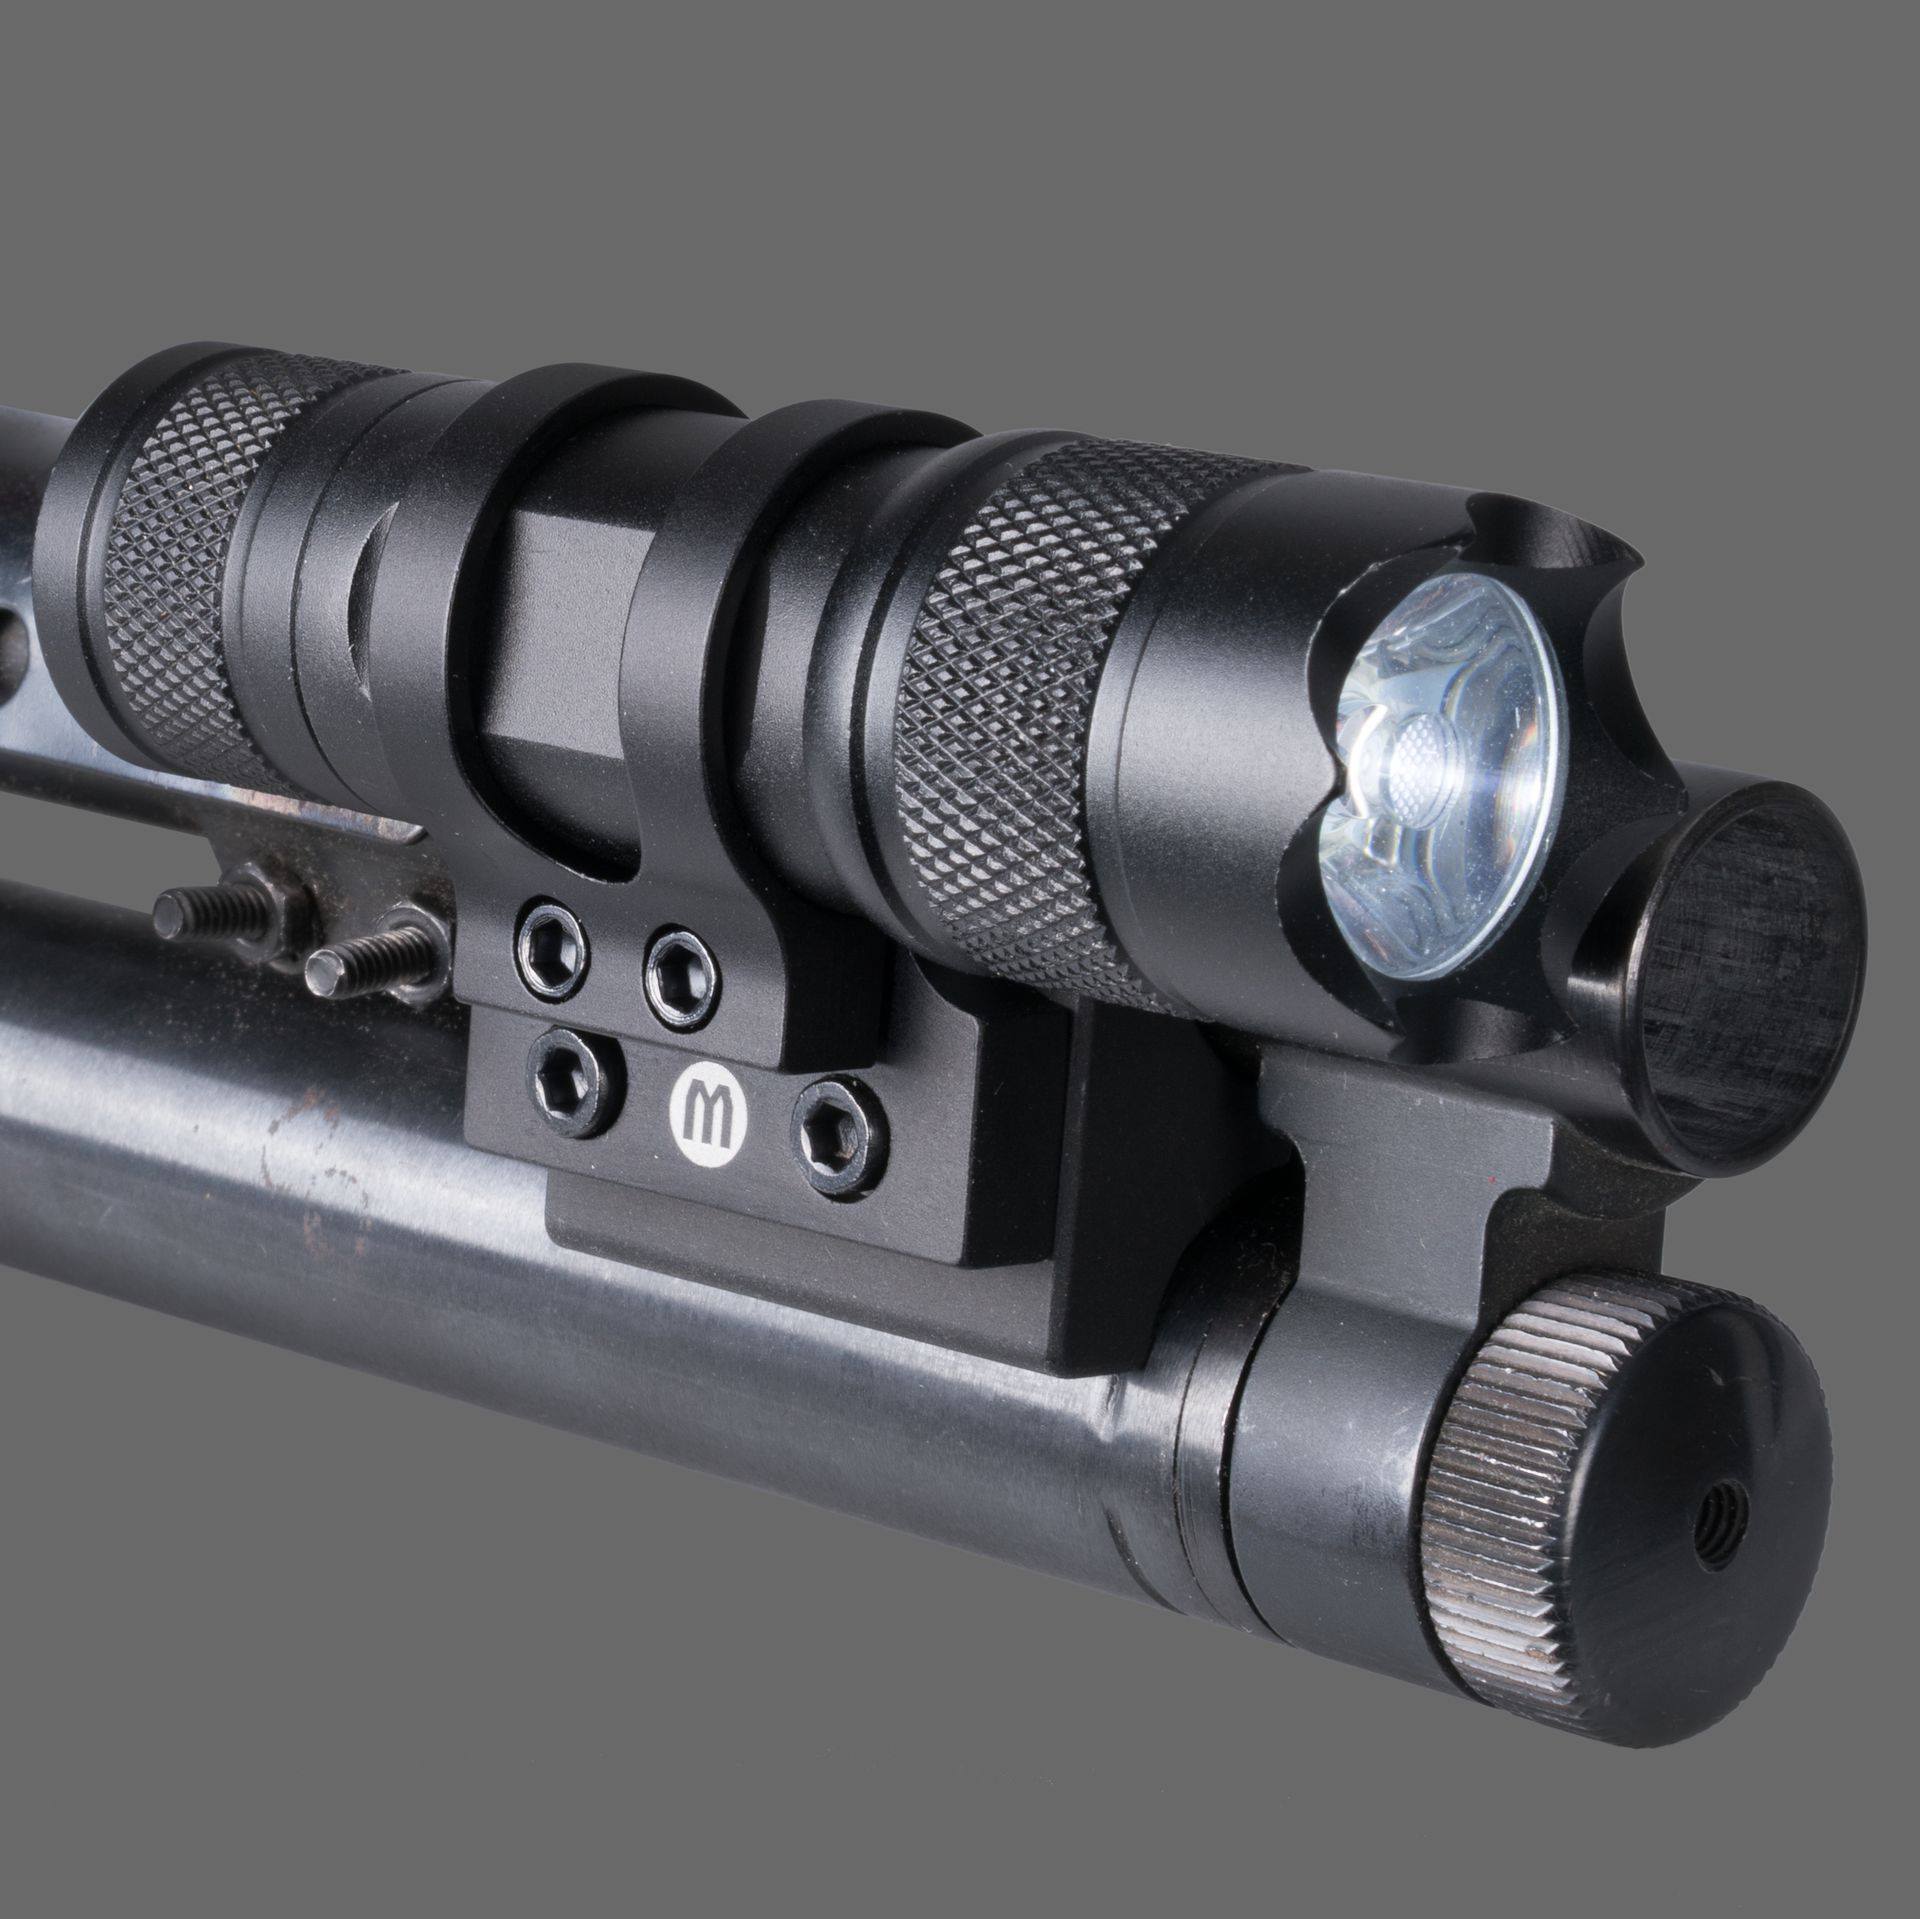 Monstrum Offset Flashlight Mount for Shotguns 1 inch Diameter - $9.95 (Free S/H over $25)